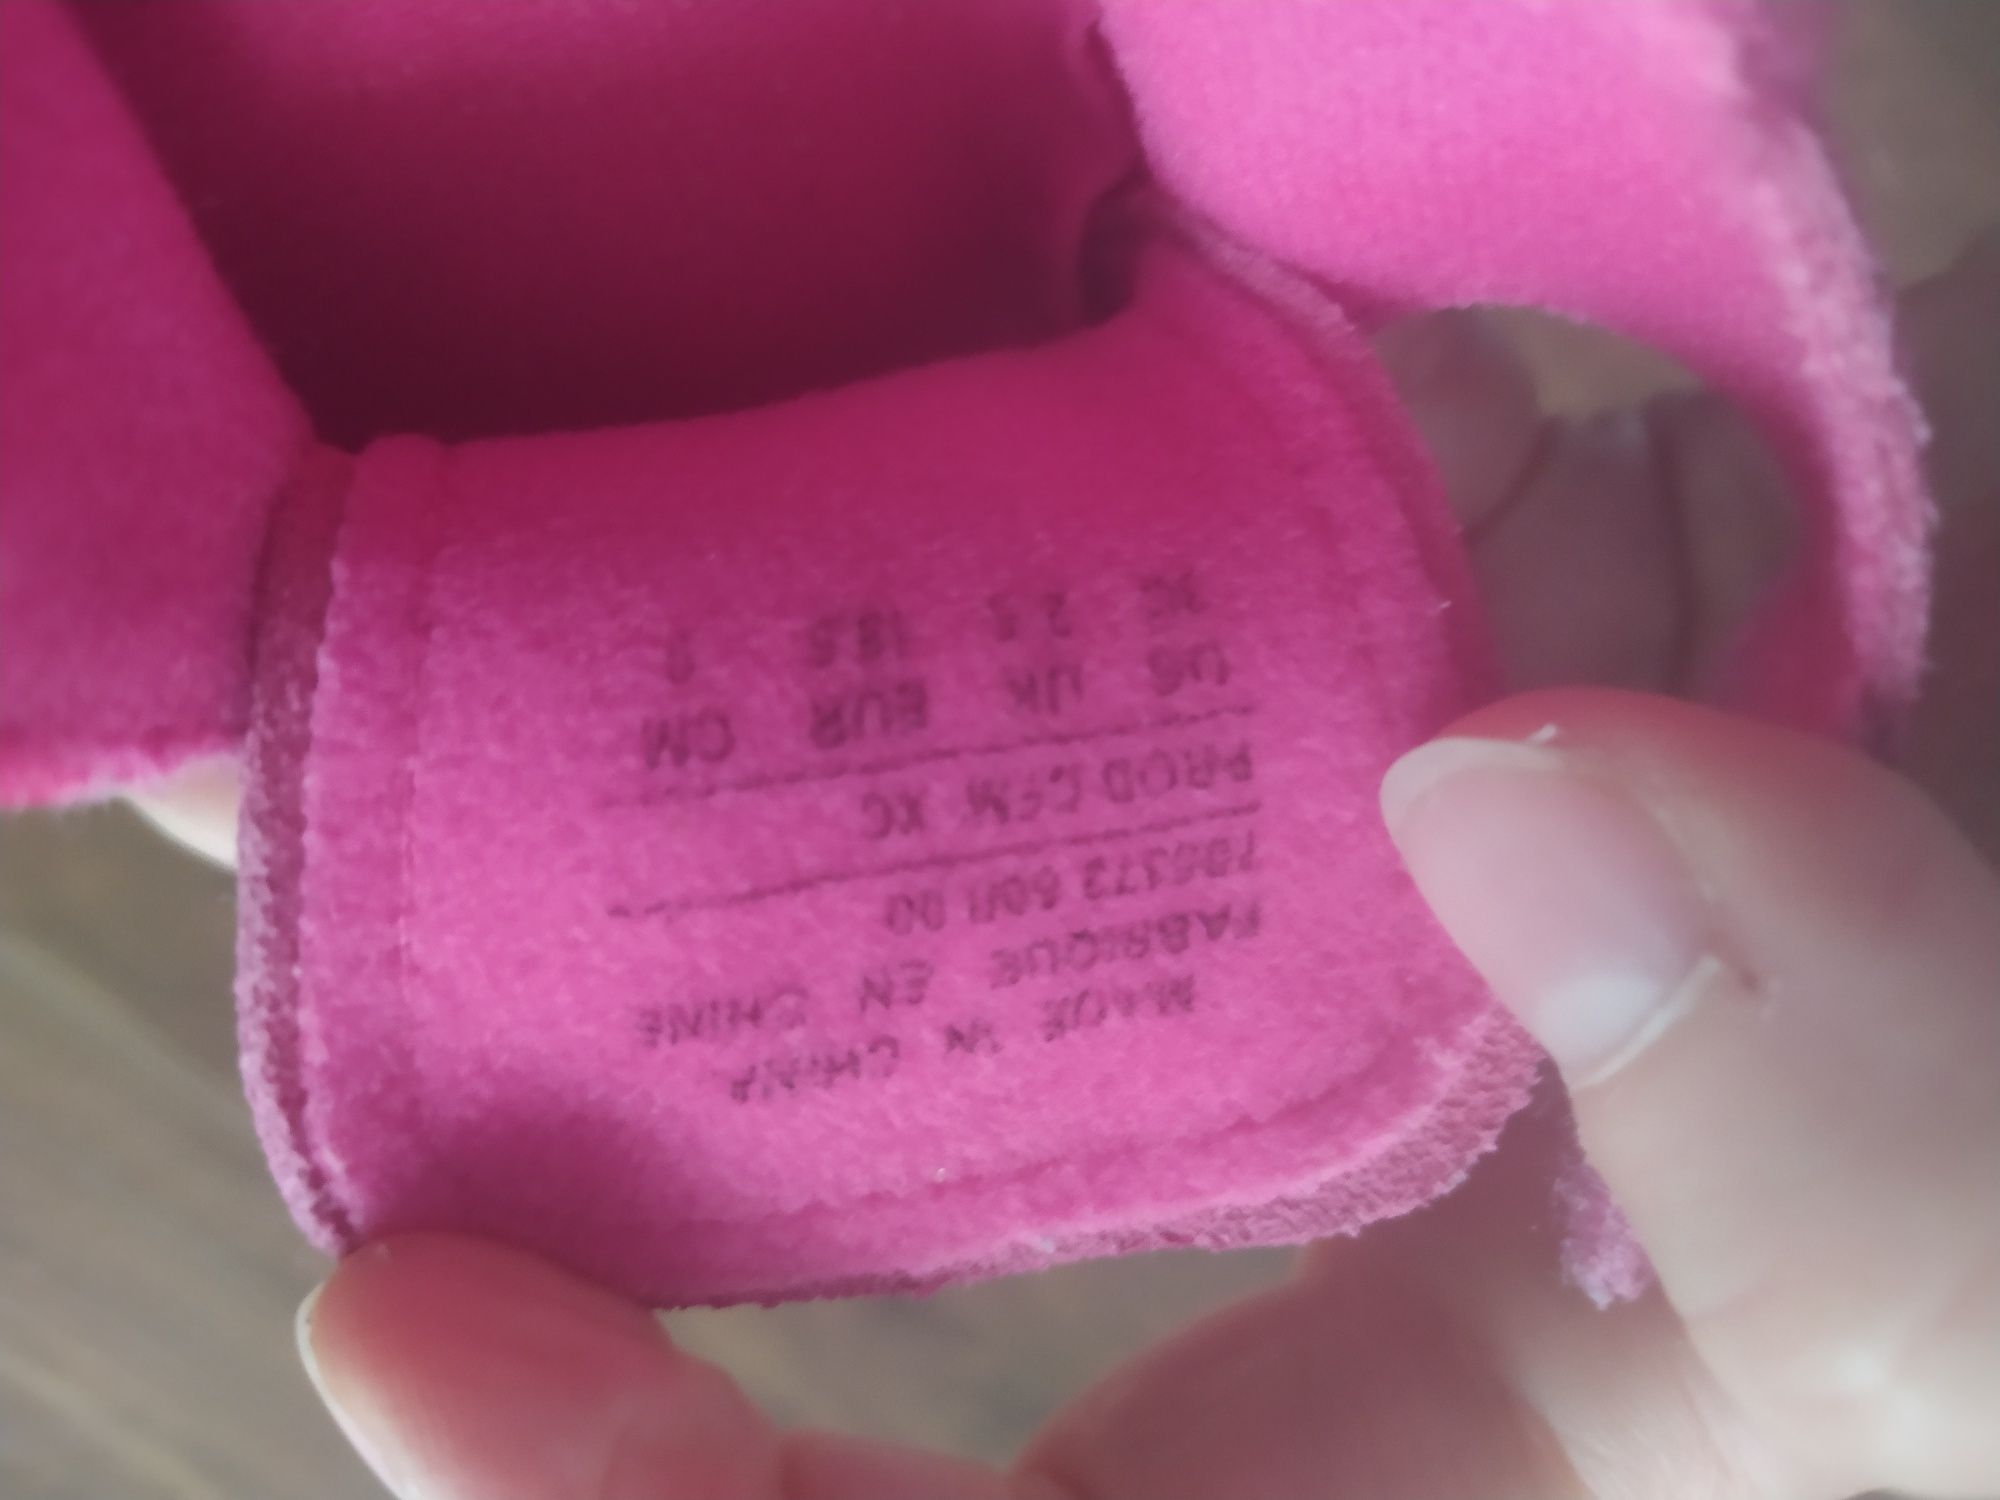 Nike niechodki adidaski różowe r 18, 5